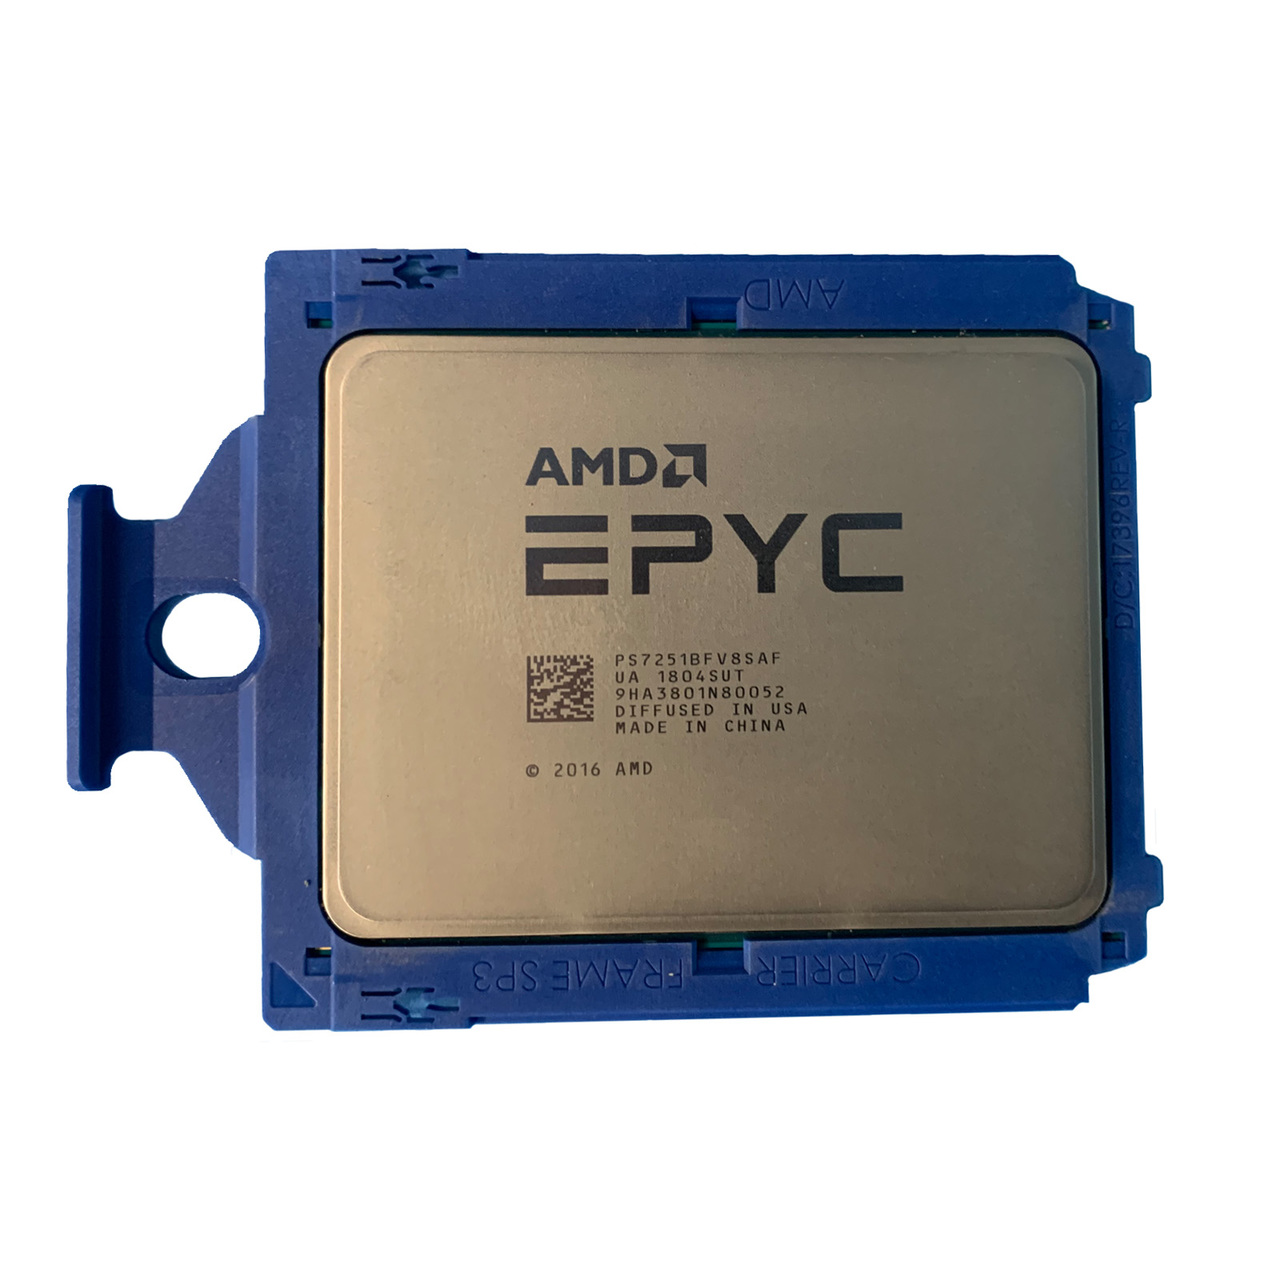 TYF81 | Dell AMD Epyc 7251 8C 2.1GHz 32MB Processor